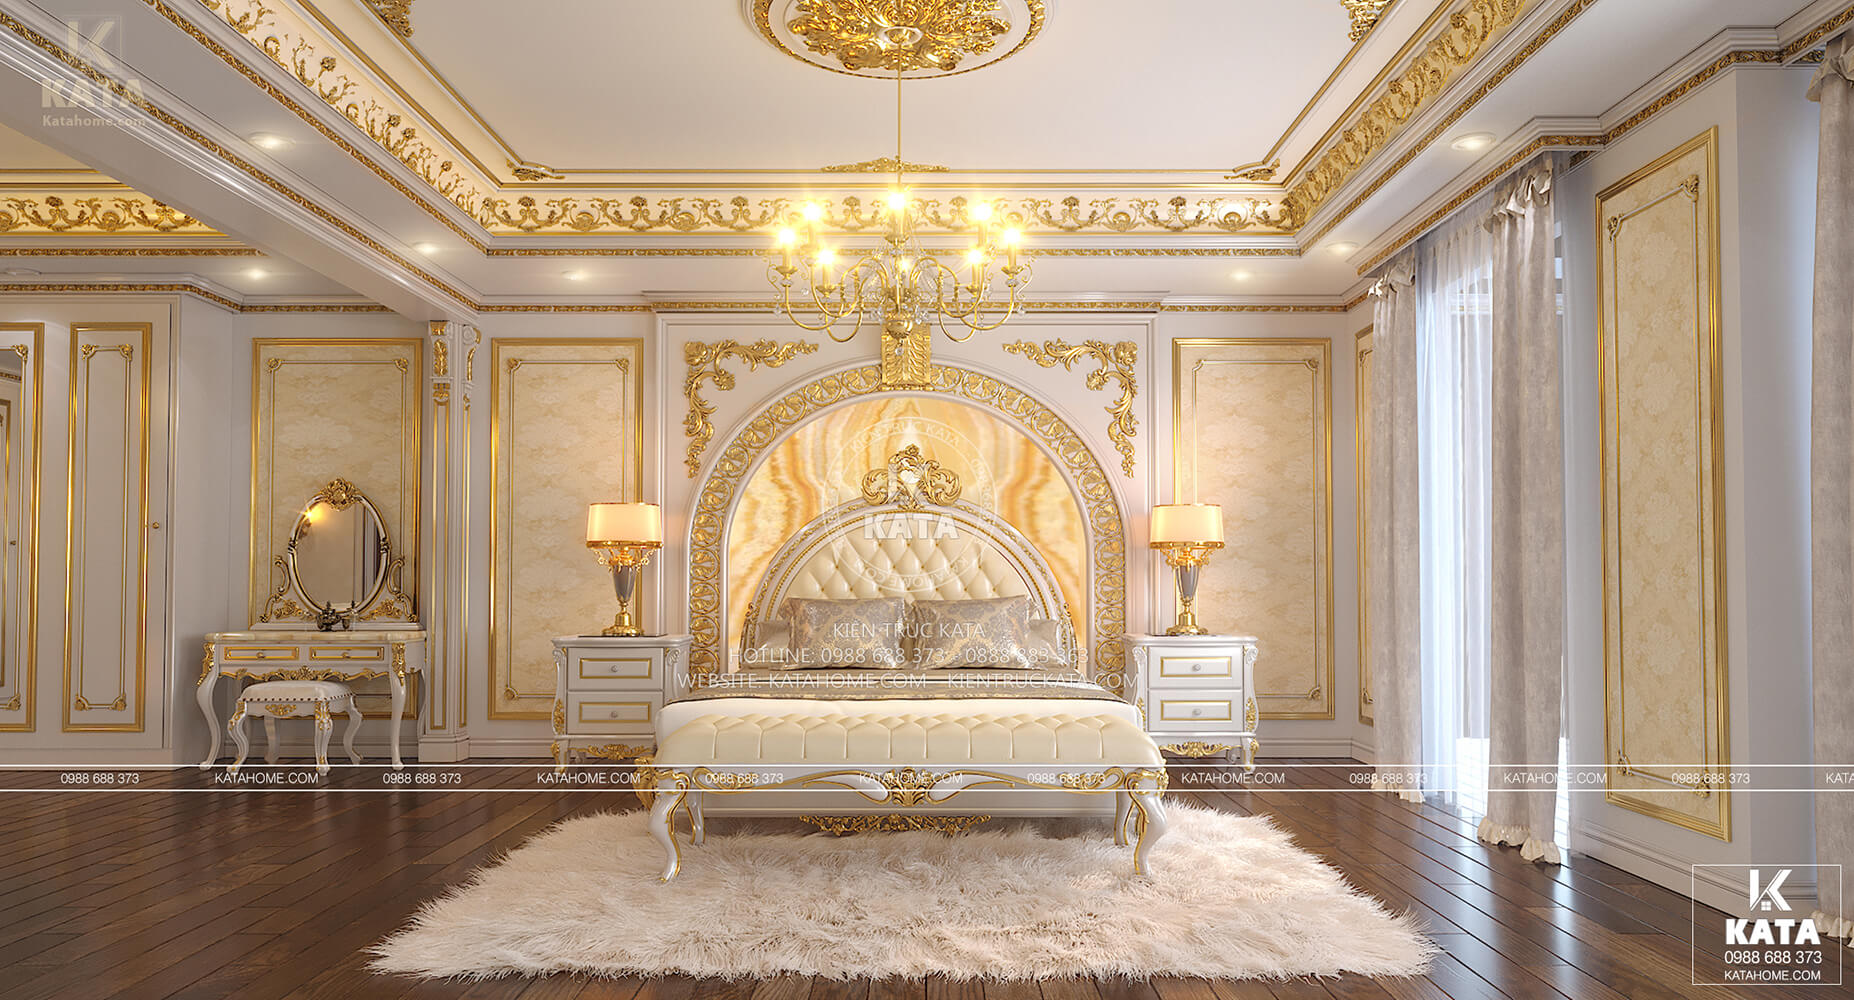 Thiết kế nội thất tân cổ điển nổi bật với sắ trắng và vàng làm chủ đạo